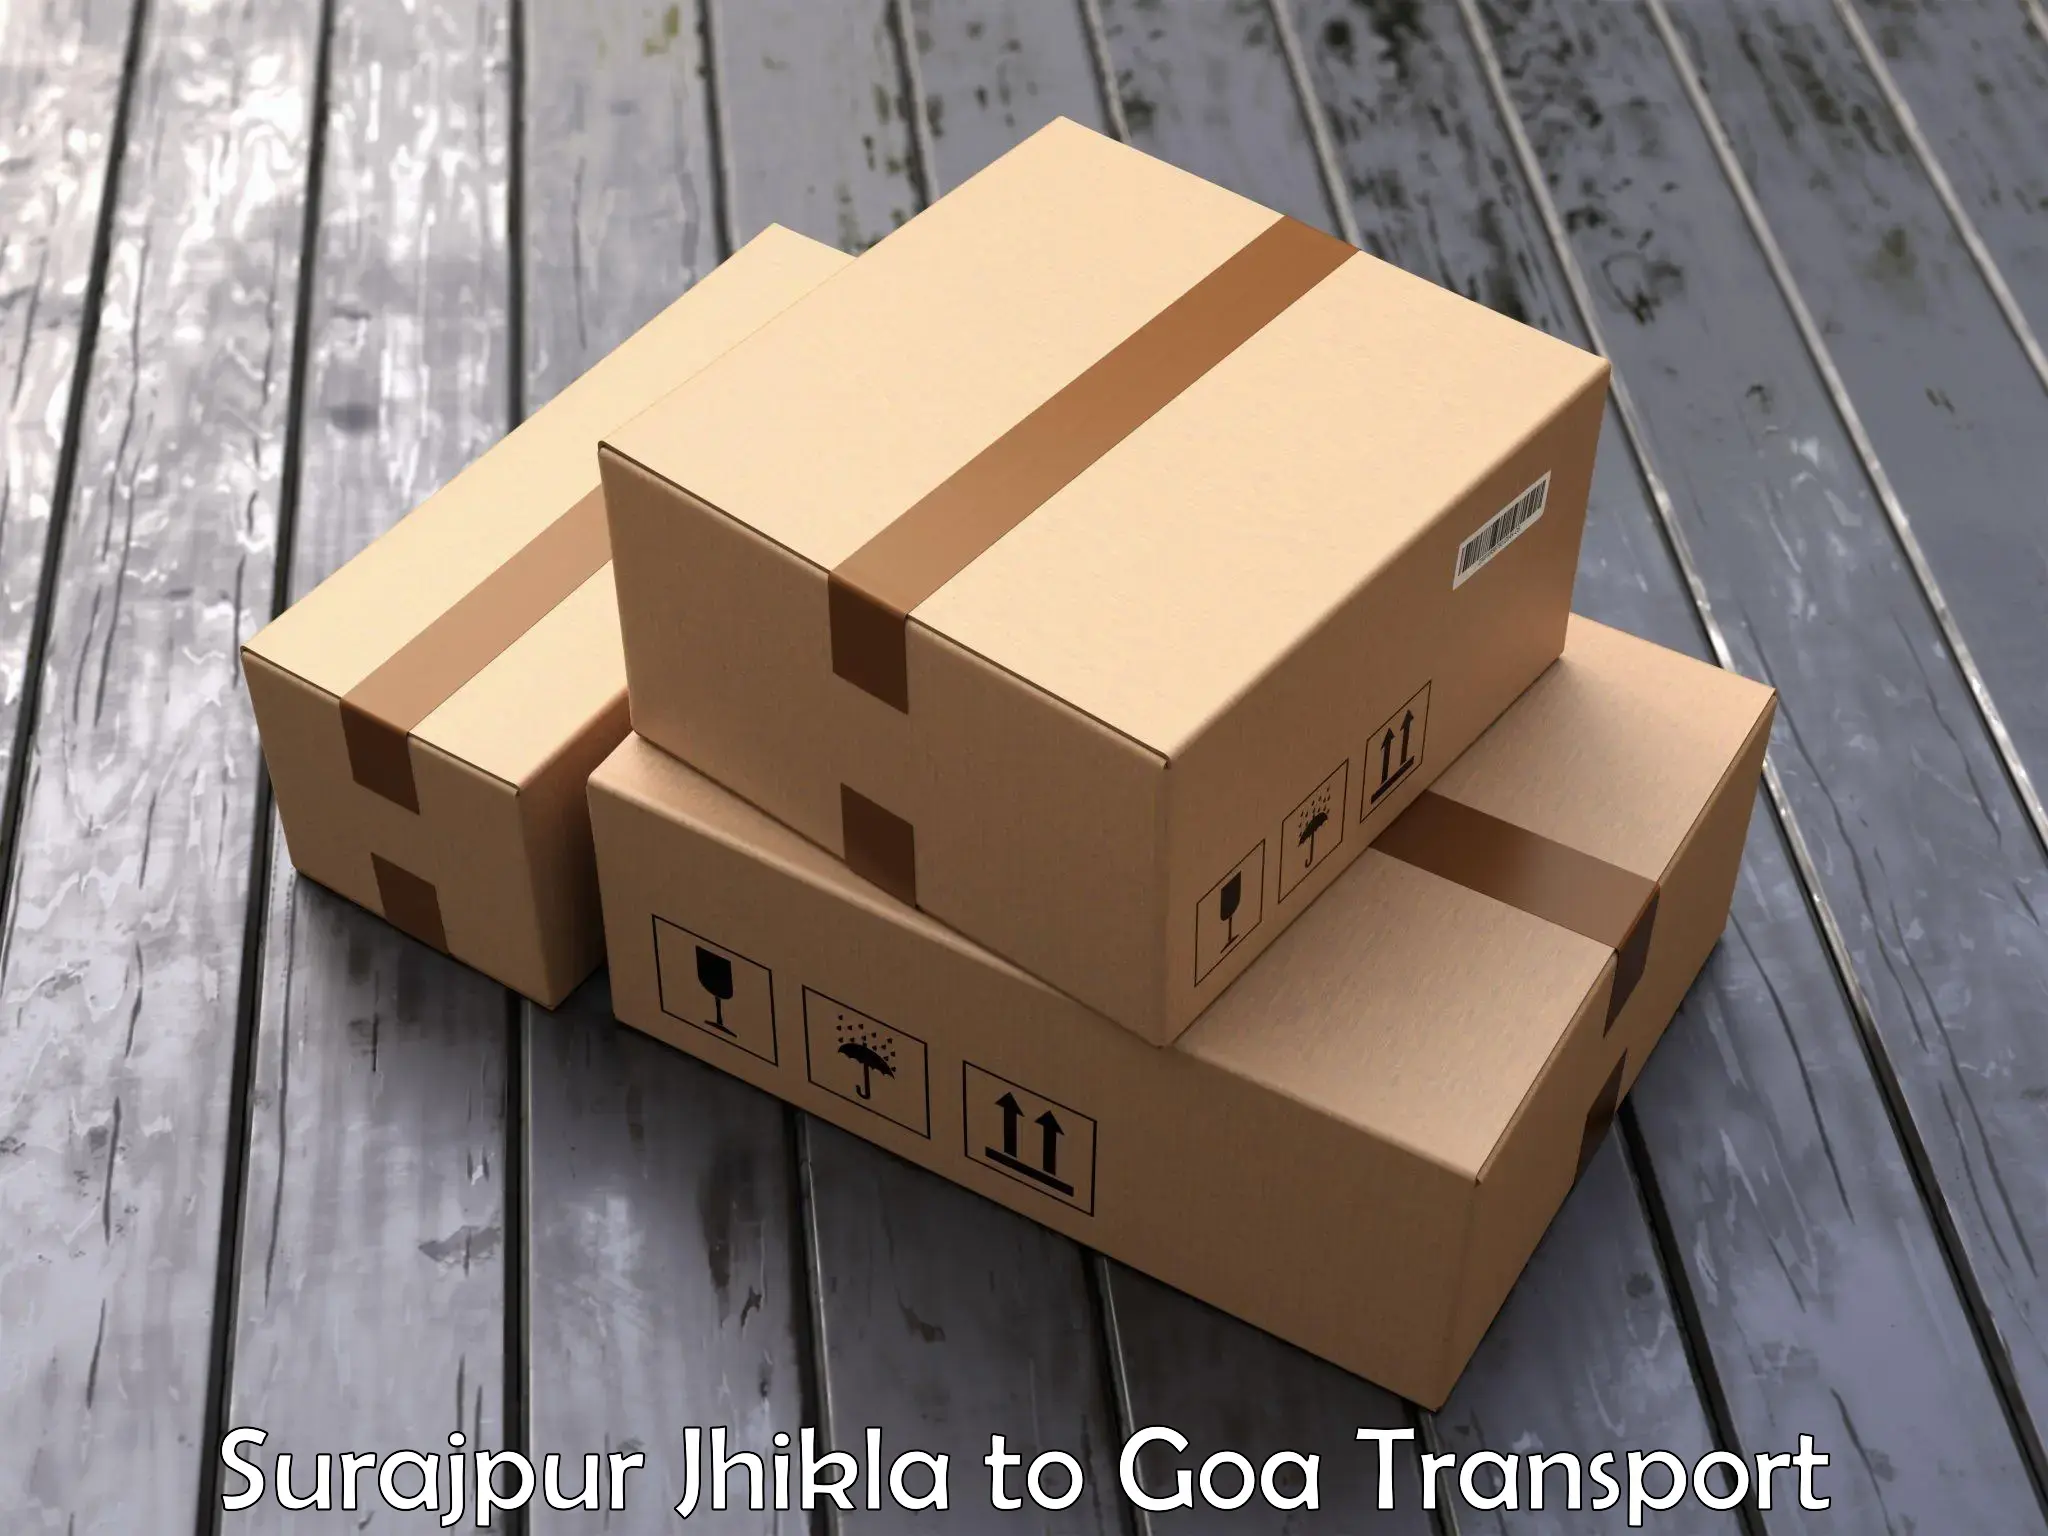 Vehicle parcel service Surajpur Jhikla to Goa